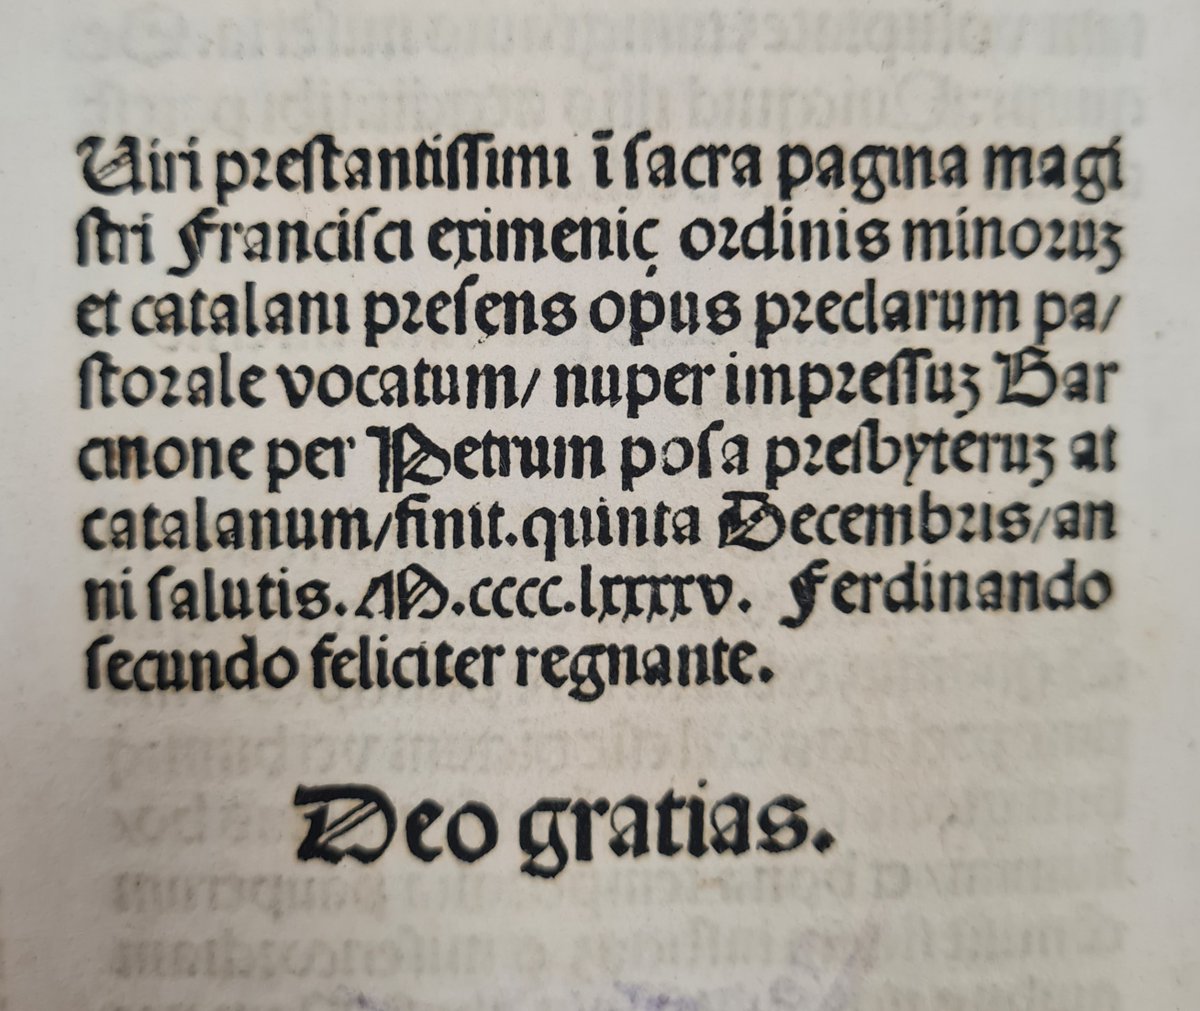 #TalDiaComAvui de 1⃣4⃣9⃣5⃣, #PerePosa imprimia a Barcelona el 'Pastoral' de #FrancescEiximenis. Eiximenis (c. 1330-1409) fou un frare franciscà i escriptor català del segle XIV. És un dels autors catalans medievals més llegits, publicats i traduïts. #PatrimoniBPT #Incunables